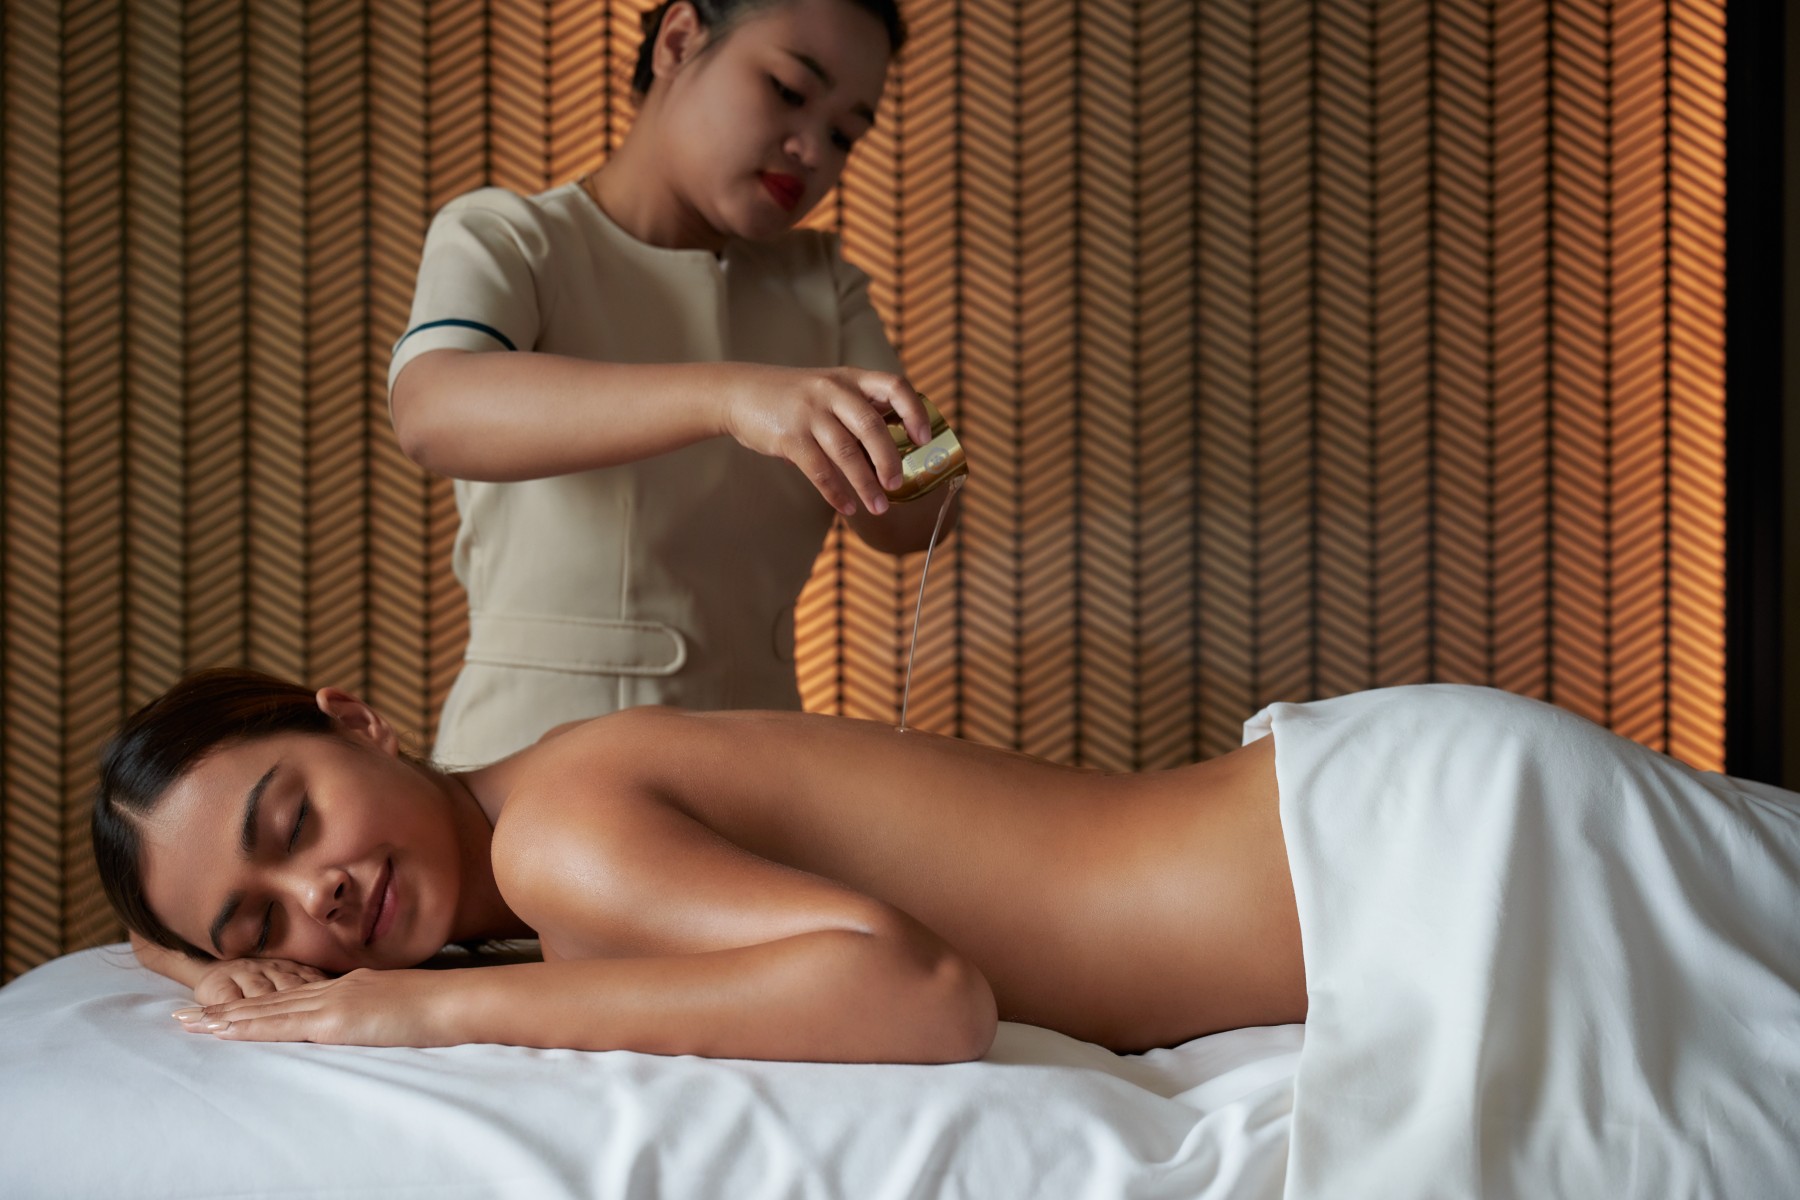 vie-spa-by-organika-a-luxury-spa-experience